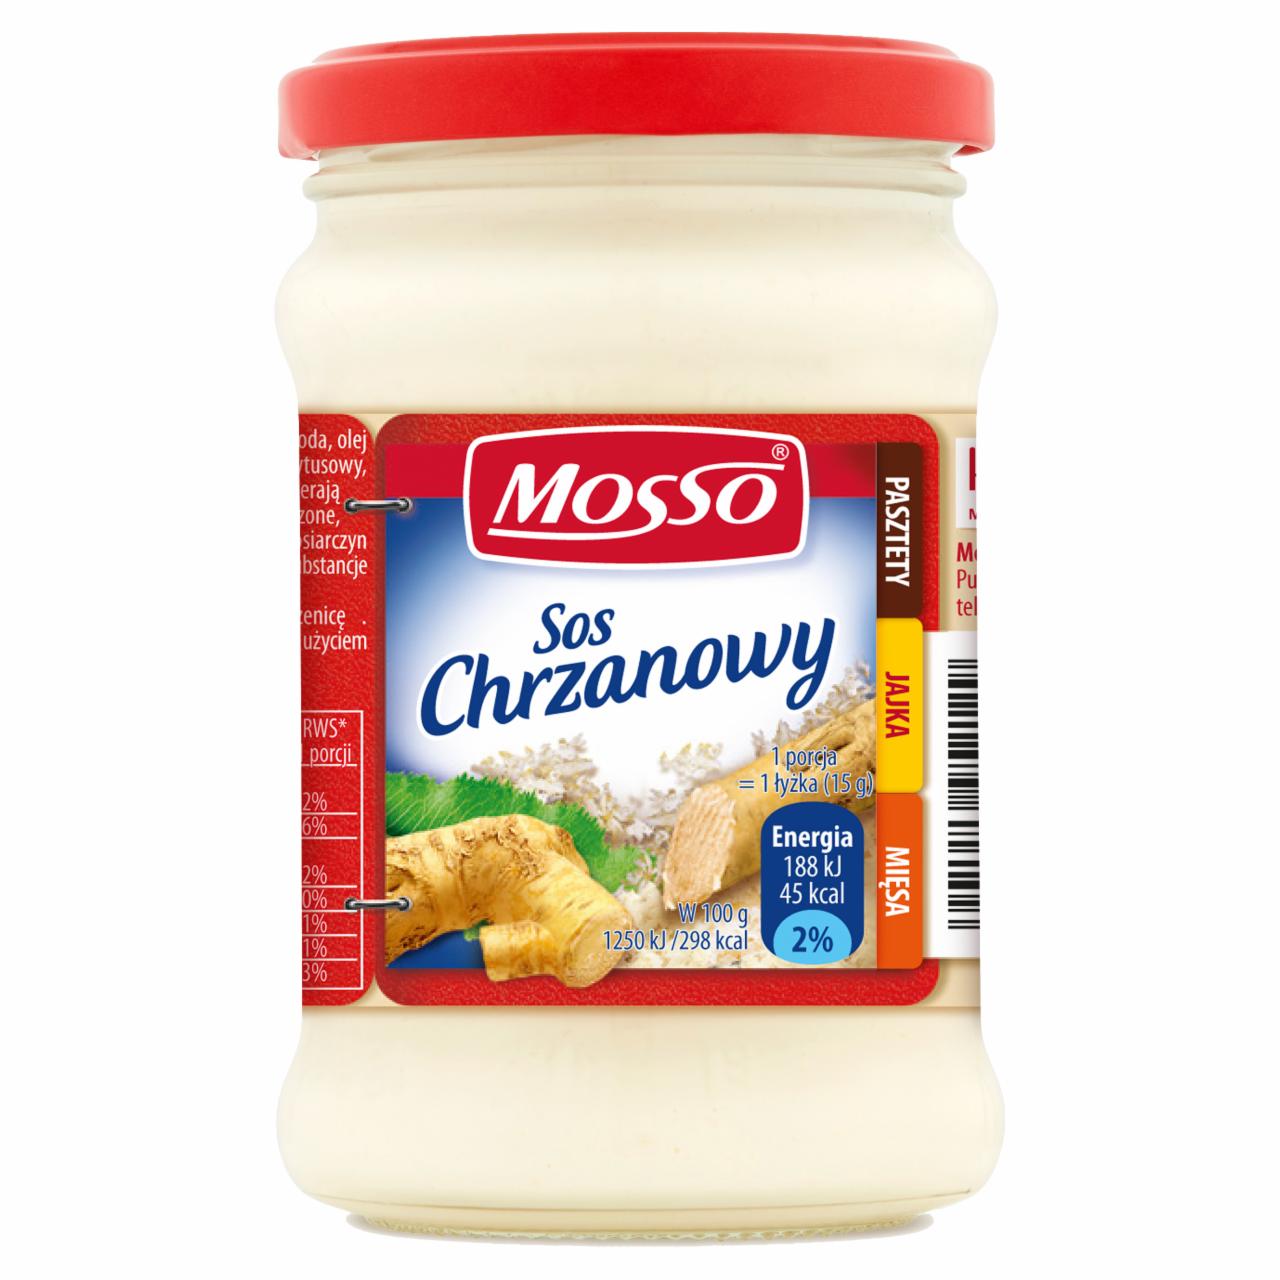 Photo - Mosso Horseradish Sauce 240 g